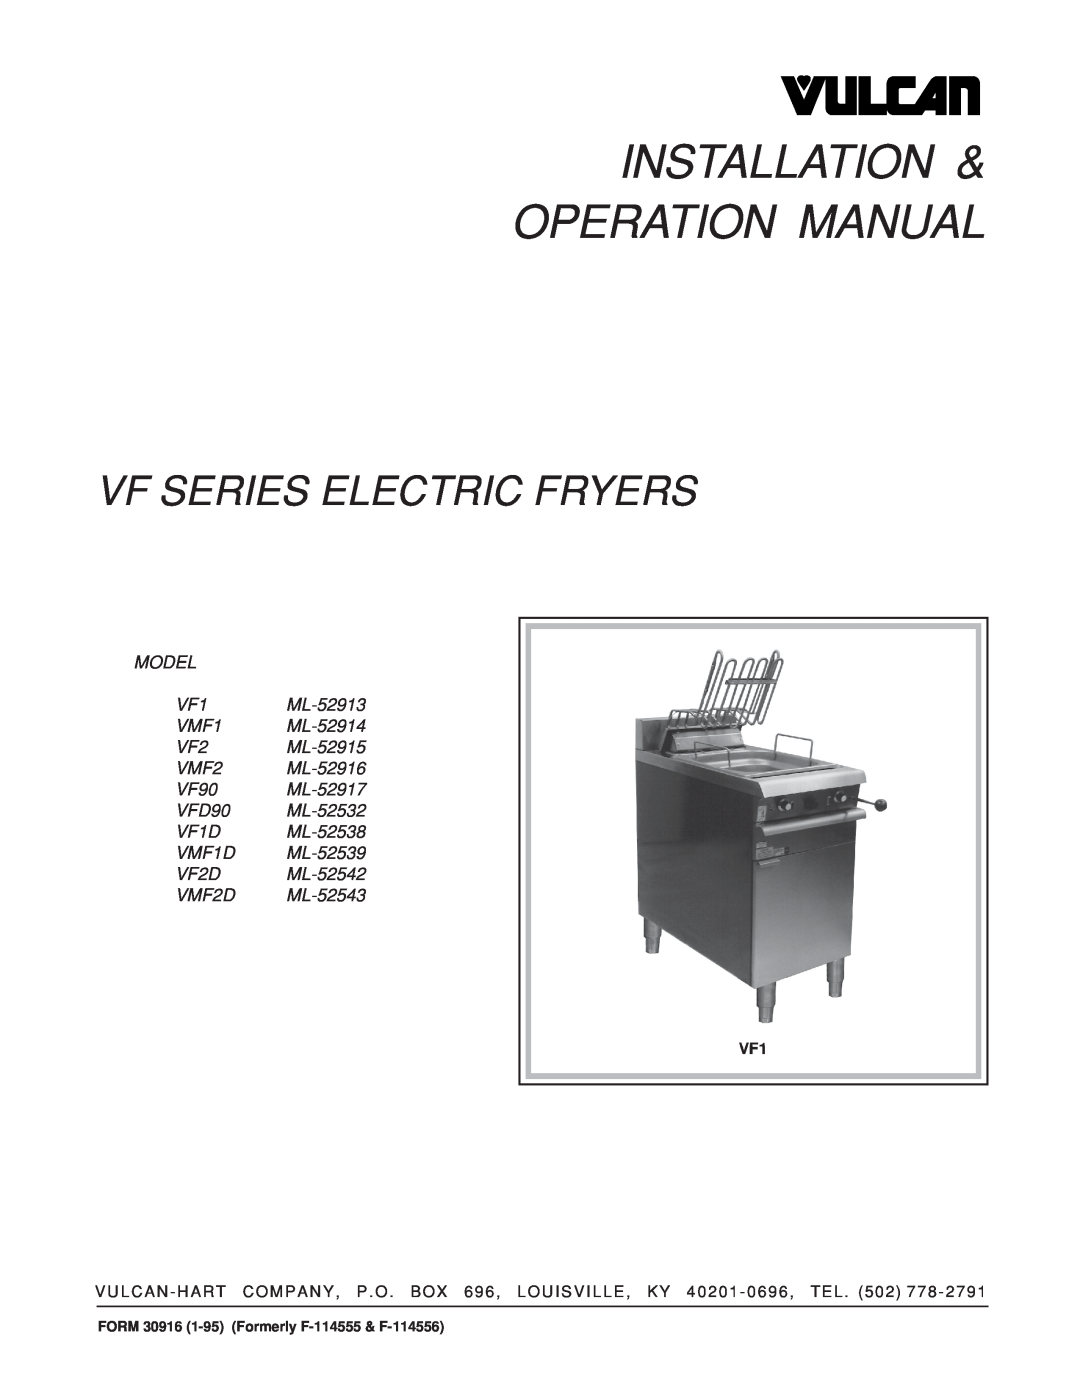 Vulcan-Hart VMF2 ML-52916, VF2 ML-52915 operation manual Vf Series Electric Fryers, VF2D ML-52542 VMF2D ML-52543 